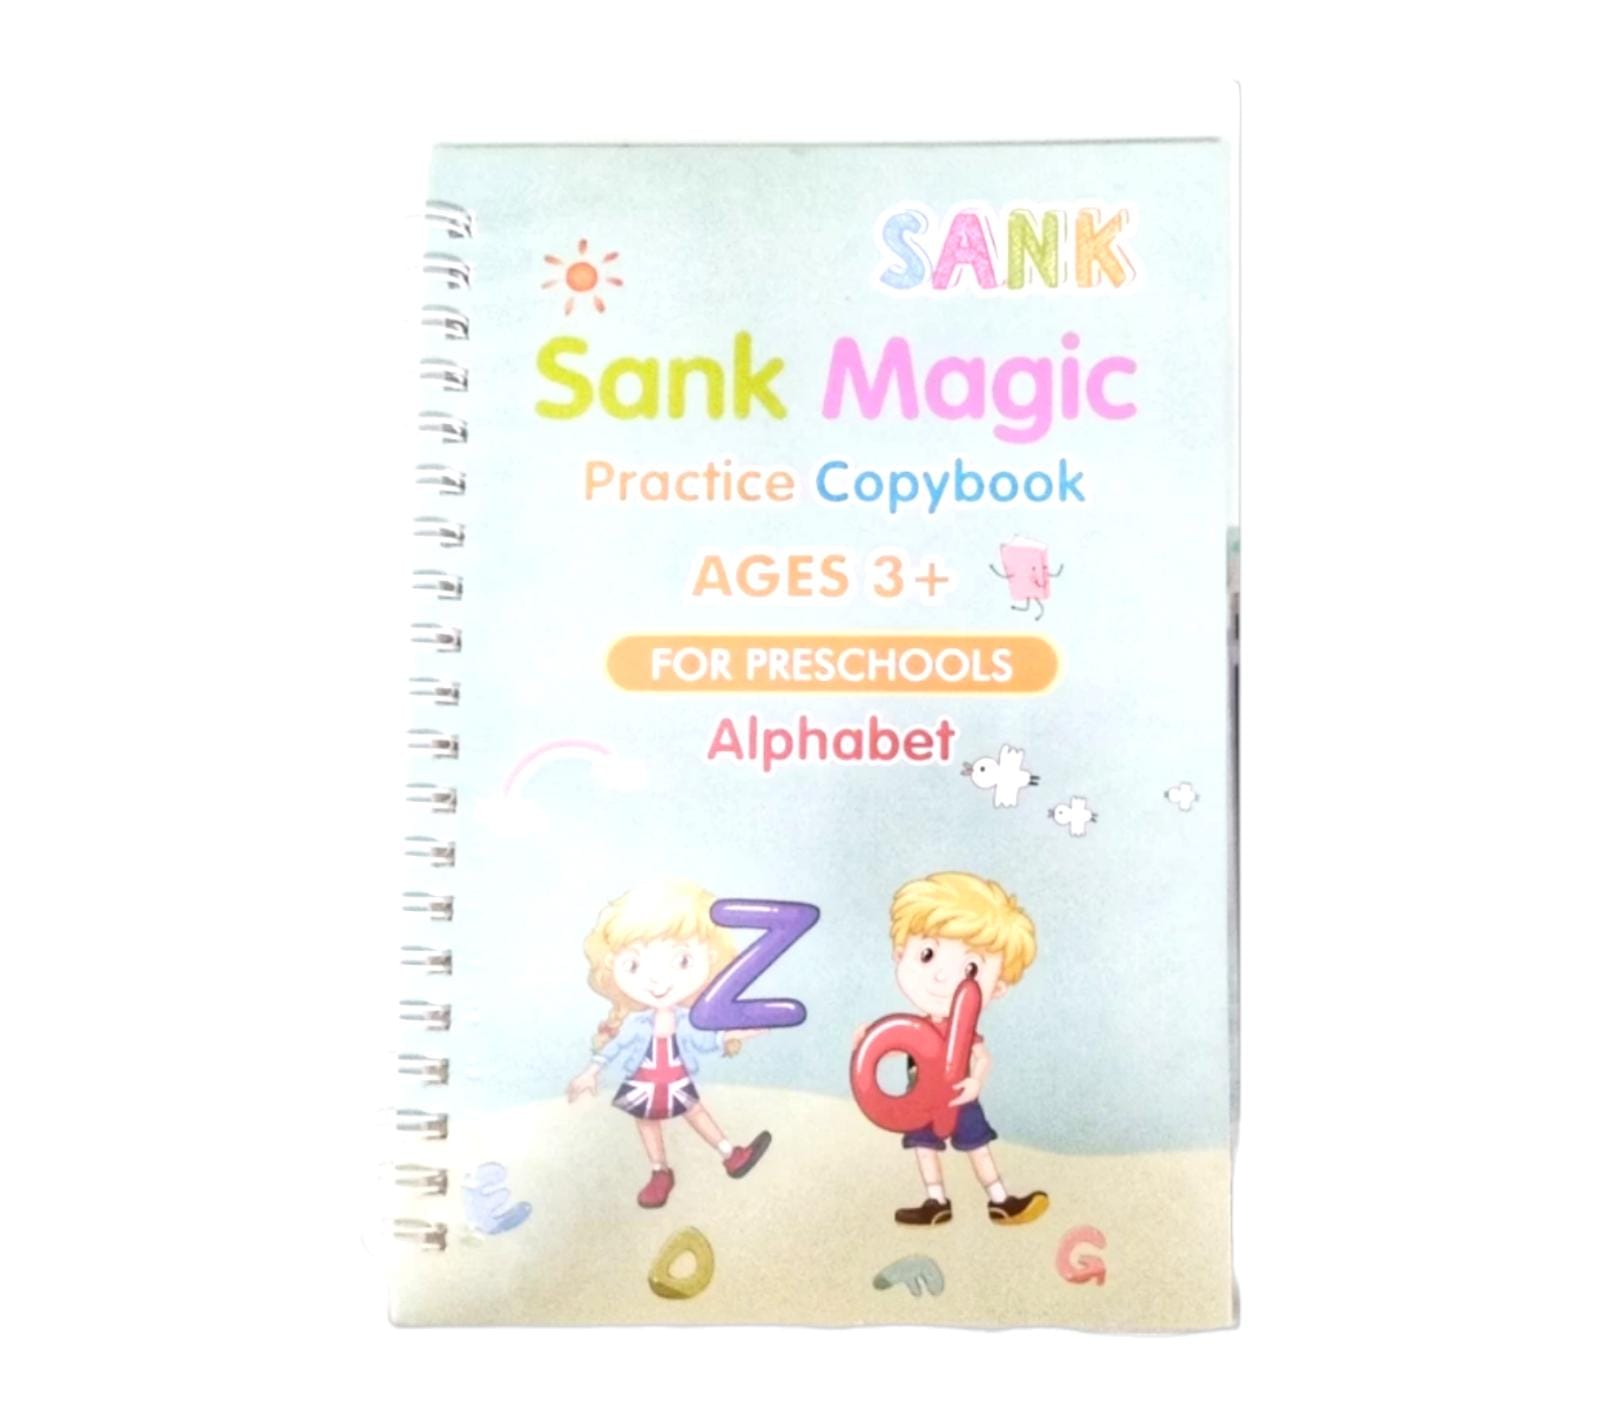 Sank magic practice copybook 